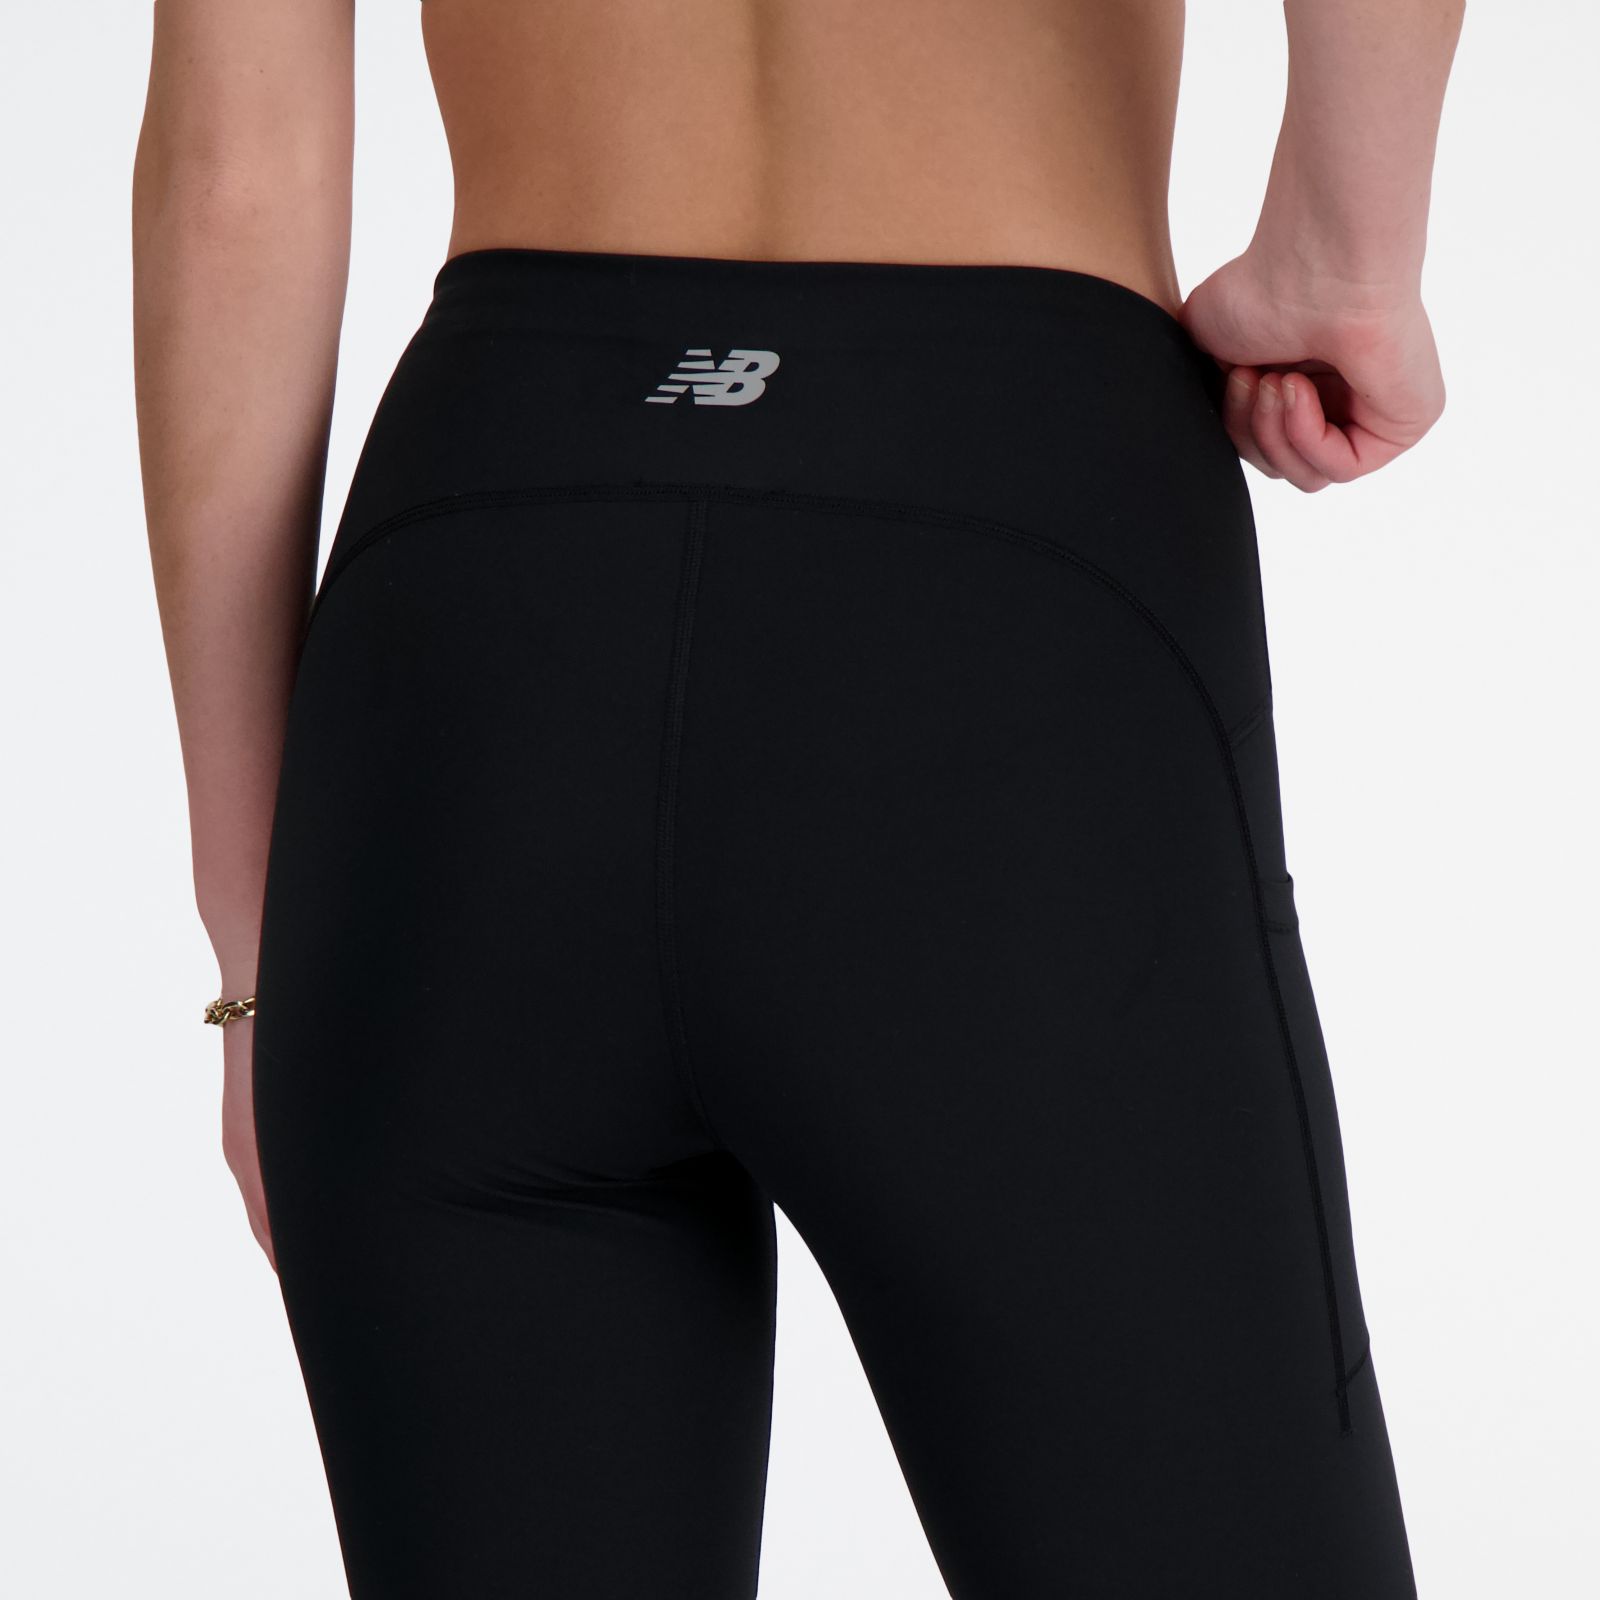 Buy New Balance women sportswear fit brand logo leggings black